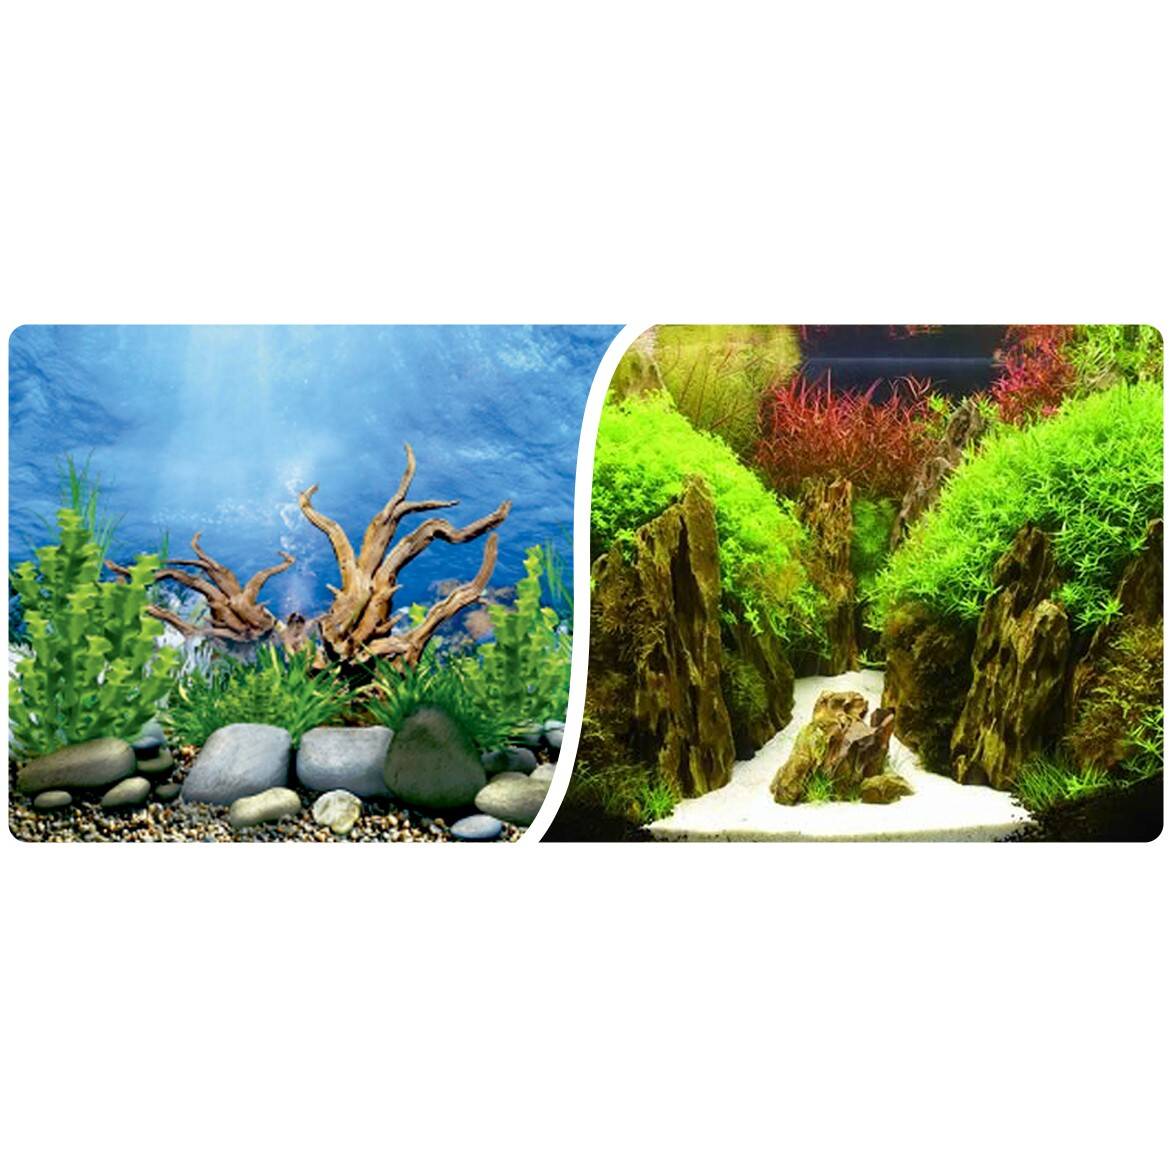 Aquarium background roll 40 cm